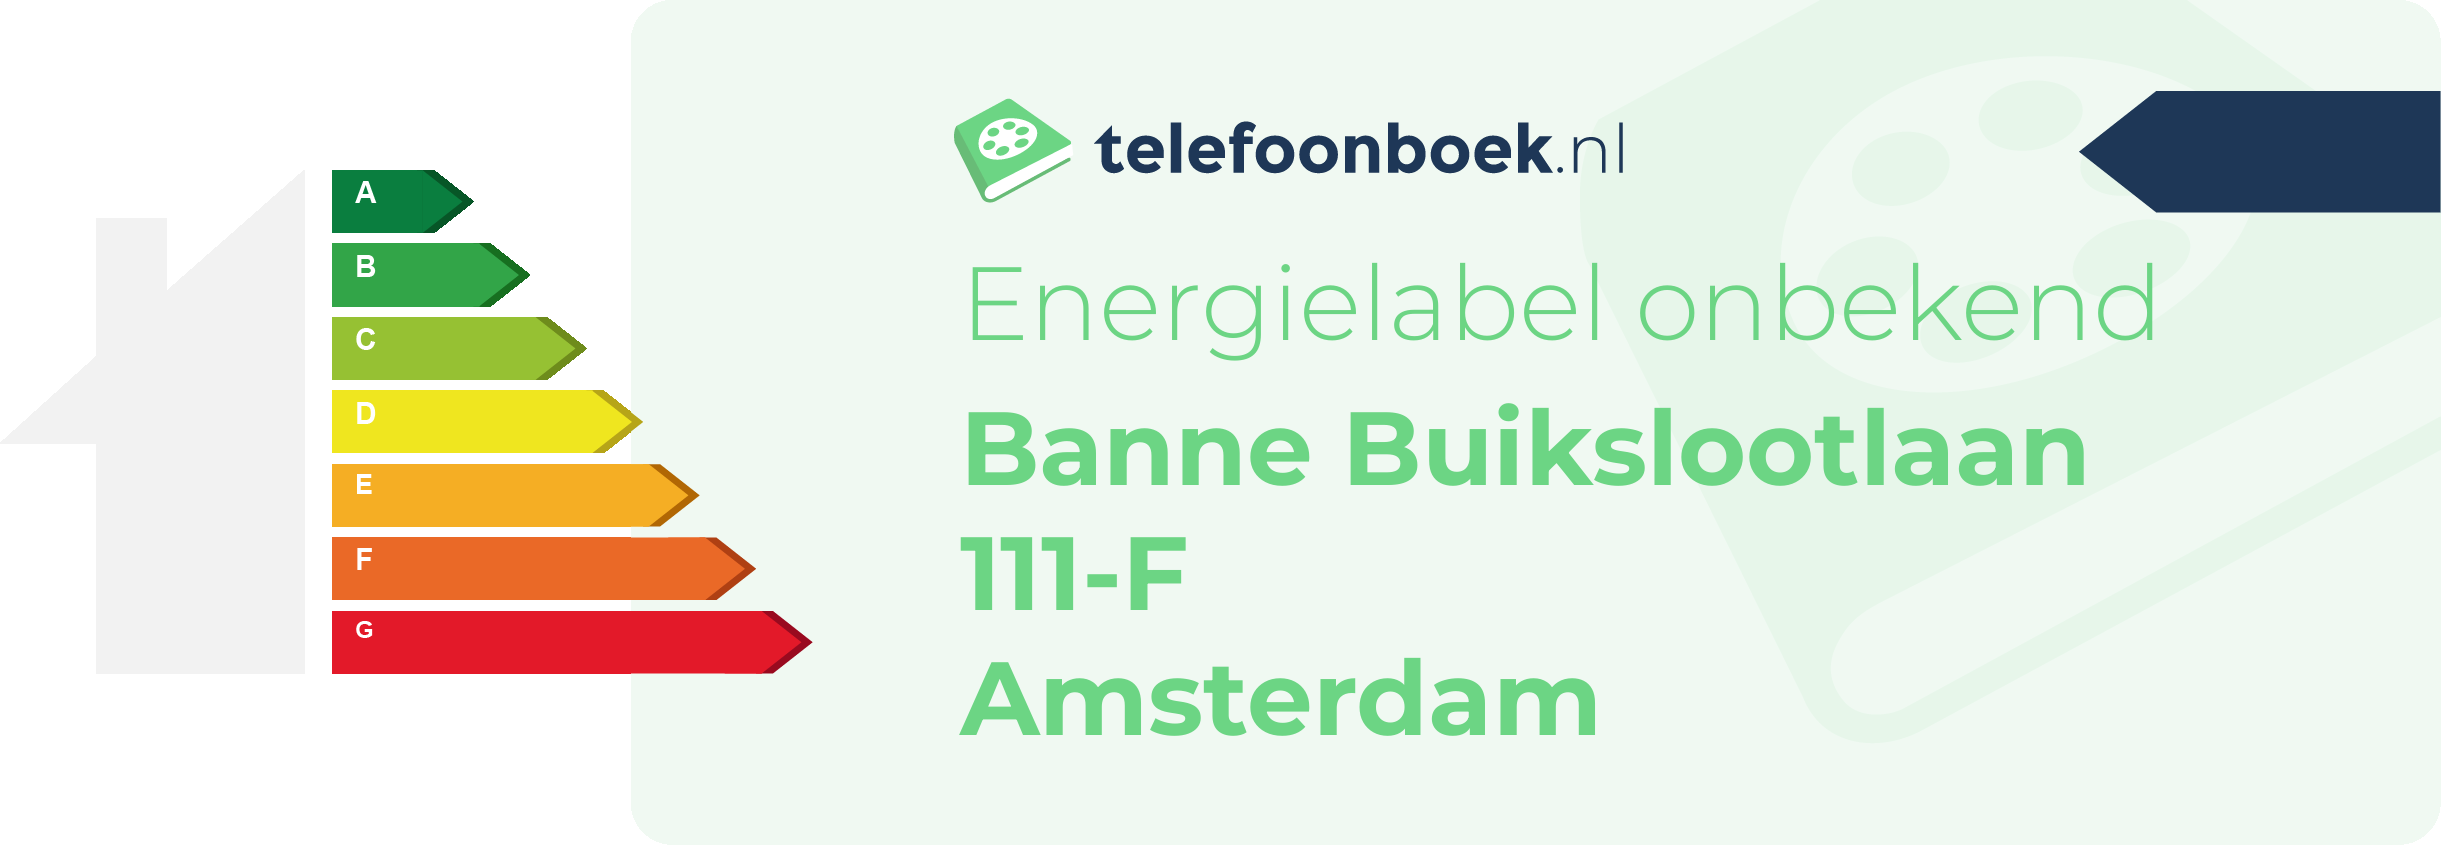 Energielabel Banne Buikslootlaan 111-F Amsterdam